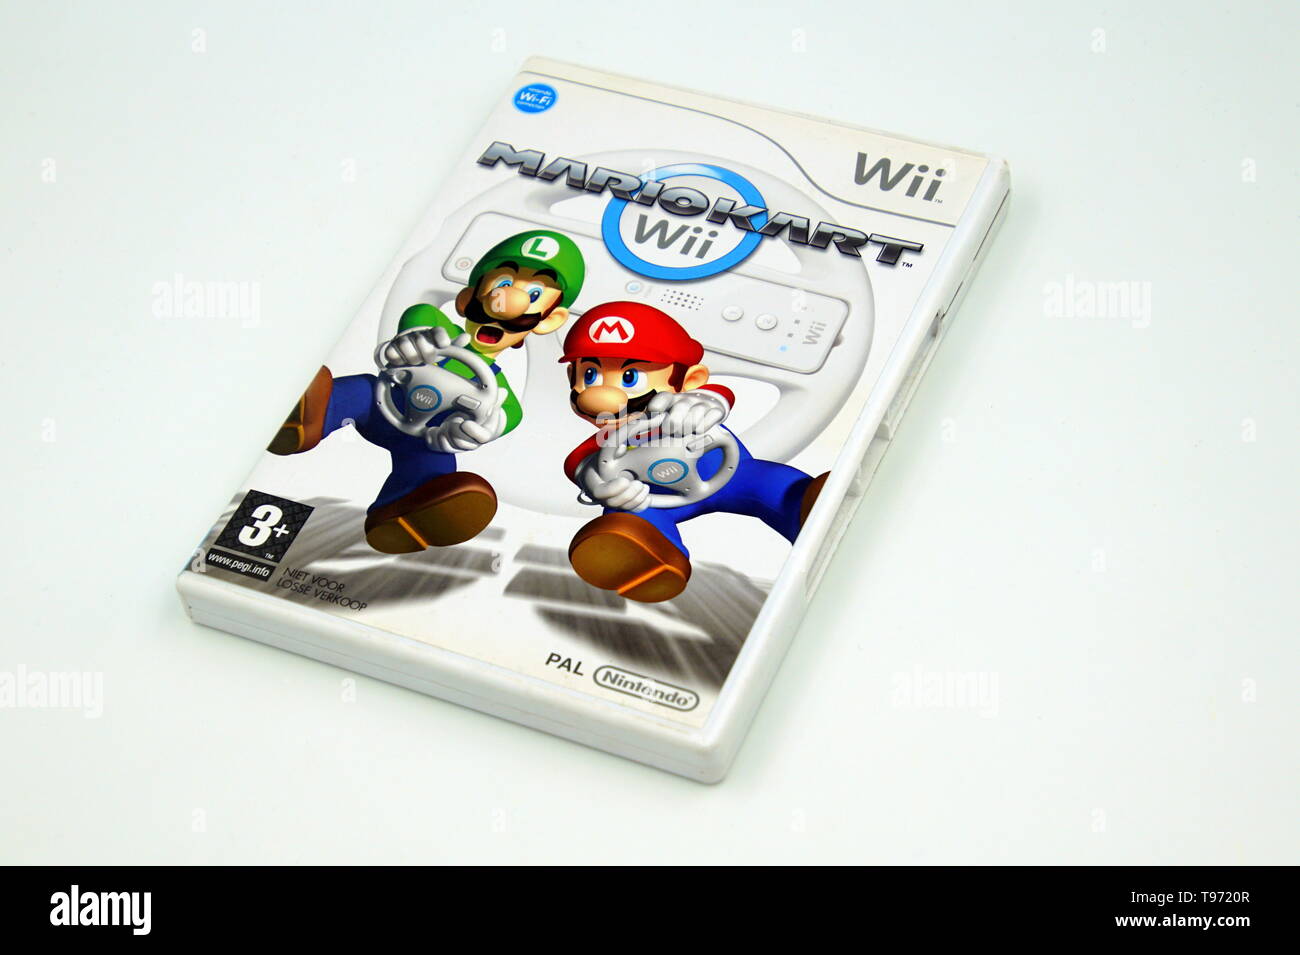 Nintendo Wii game Mario Kart against a white background Stock Photo - Alamy